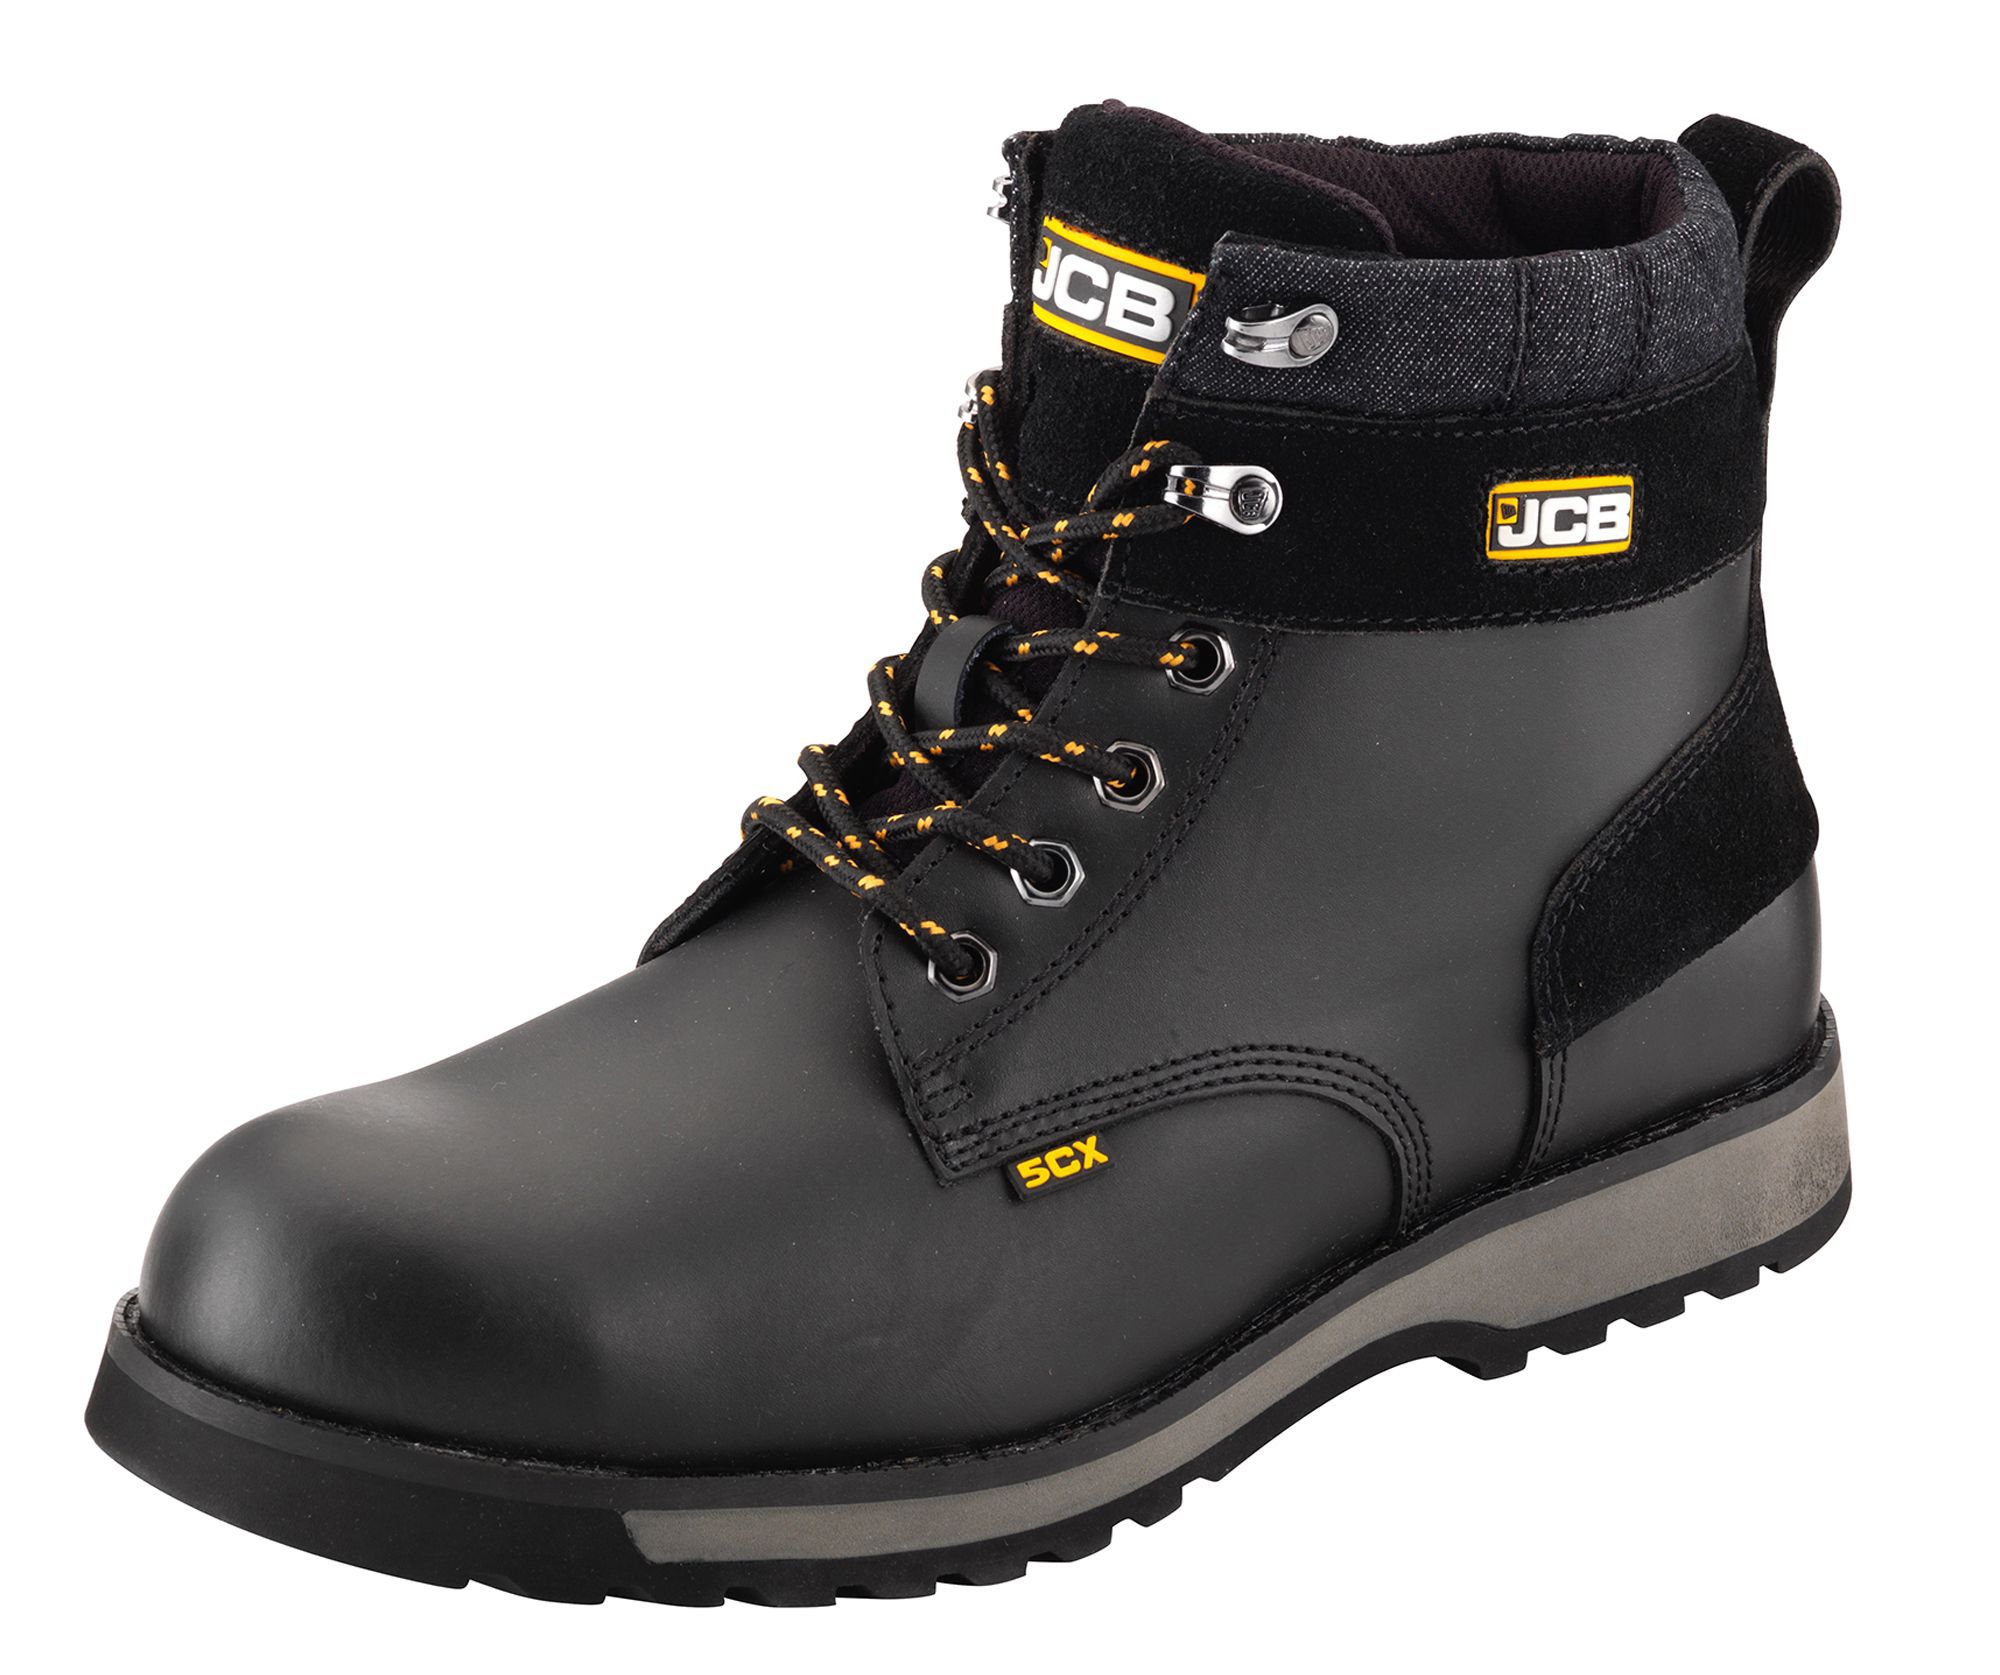 JCB 5CX Black Safety boots, Size 10